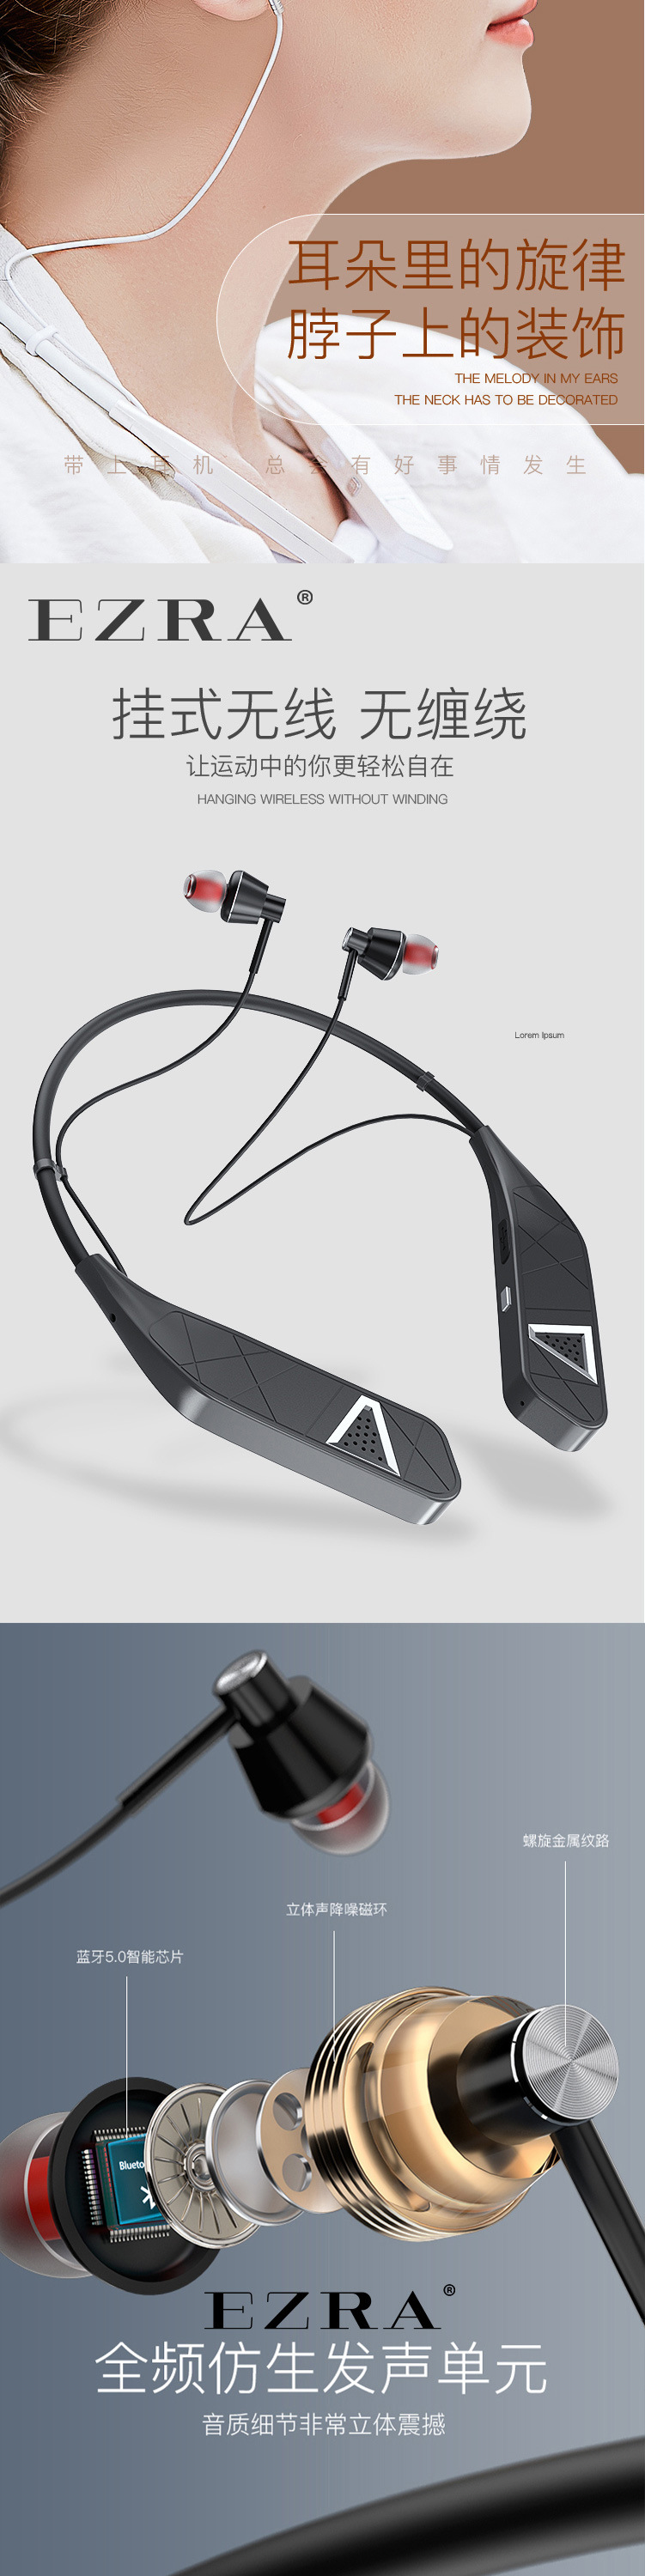 EZRA新款颈戴式无线蓝牙耳机音箱耳机二合一超强续航挂脖运动耳机舒适佩戴详情6